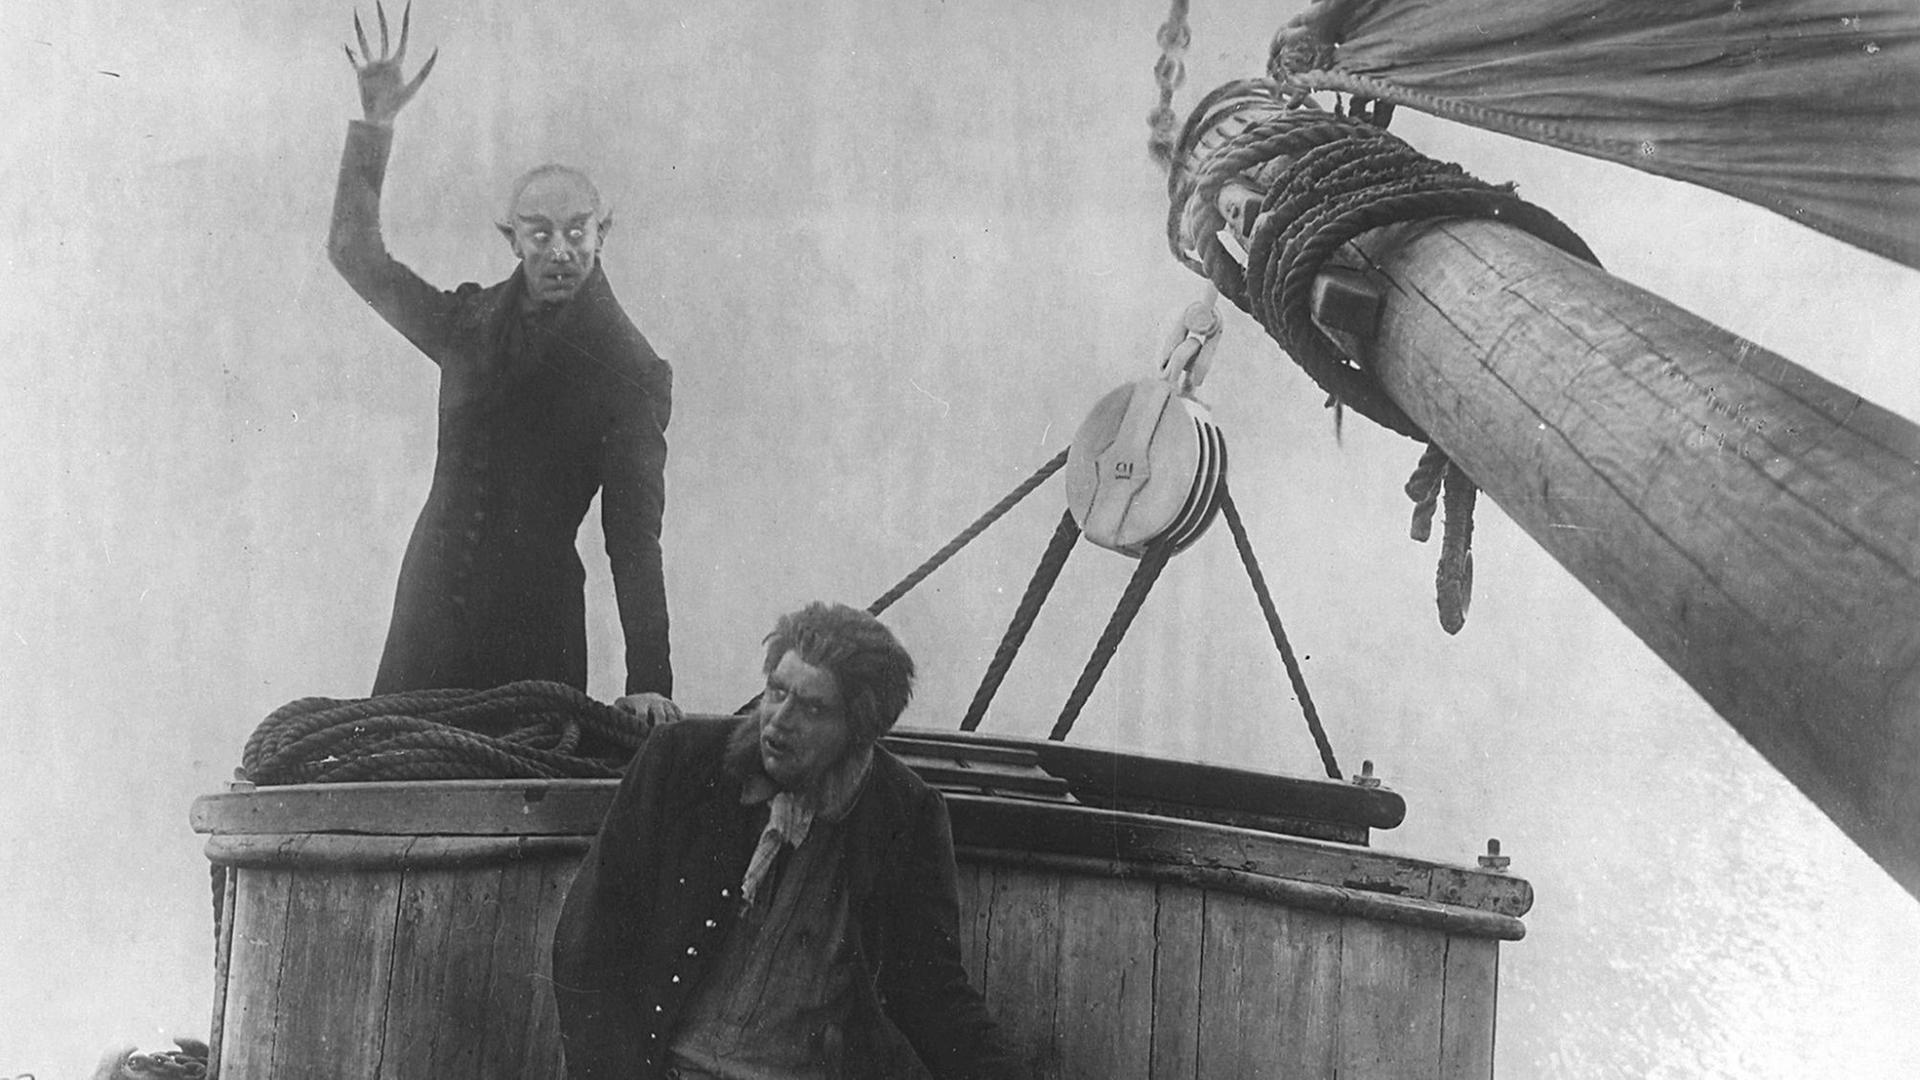 Szene aus Nosferatu "Nosferatu – eine Symphonie des Grauens" von Friedrich Wilhelm Murnau aus dem Jahr 1922. Ein Vampir und ein Steuermann auf einem Schiff.